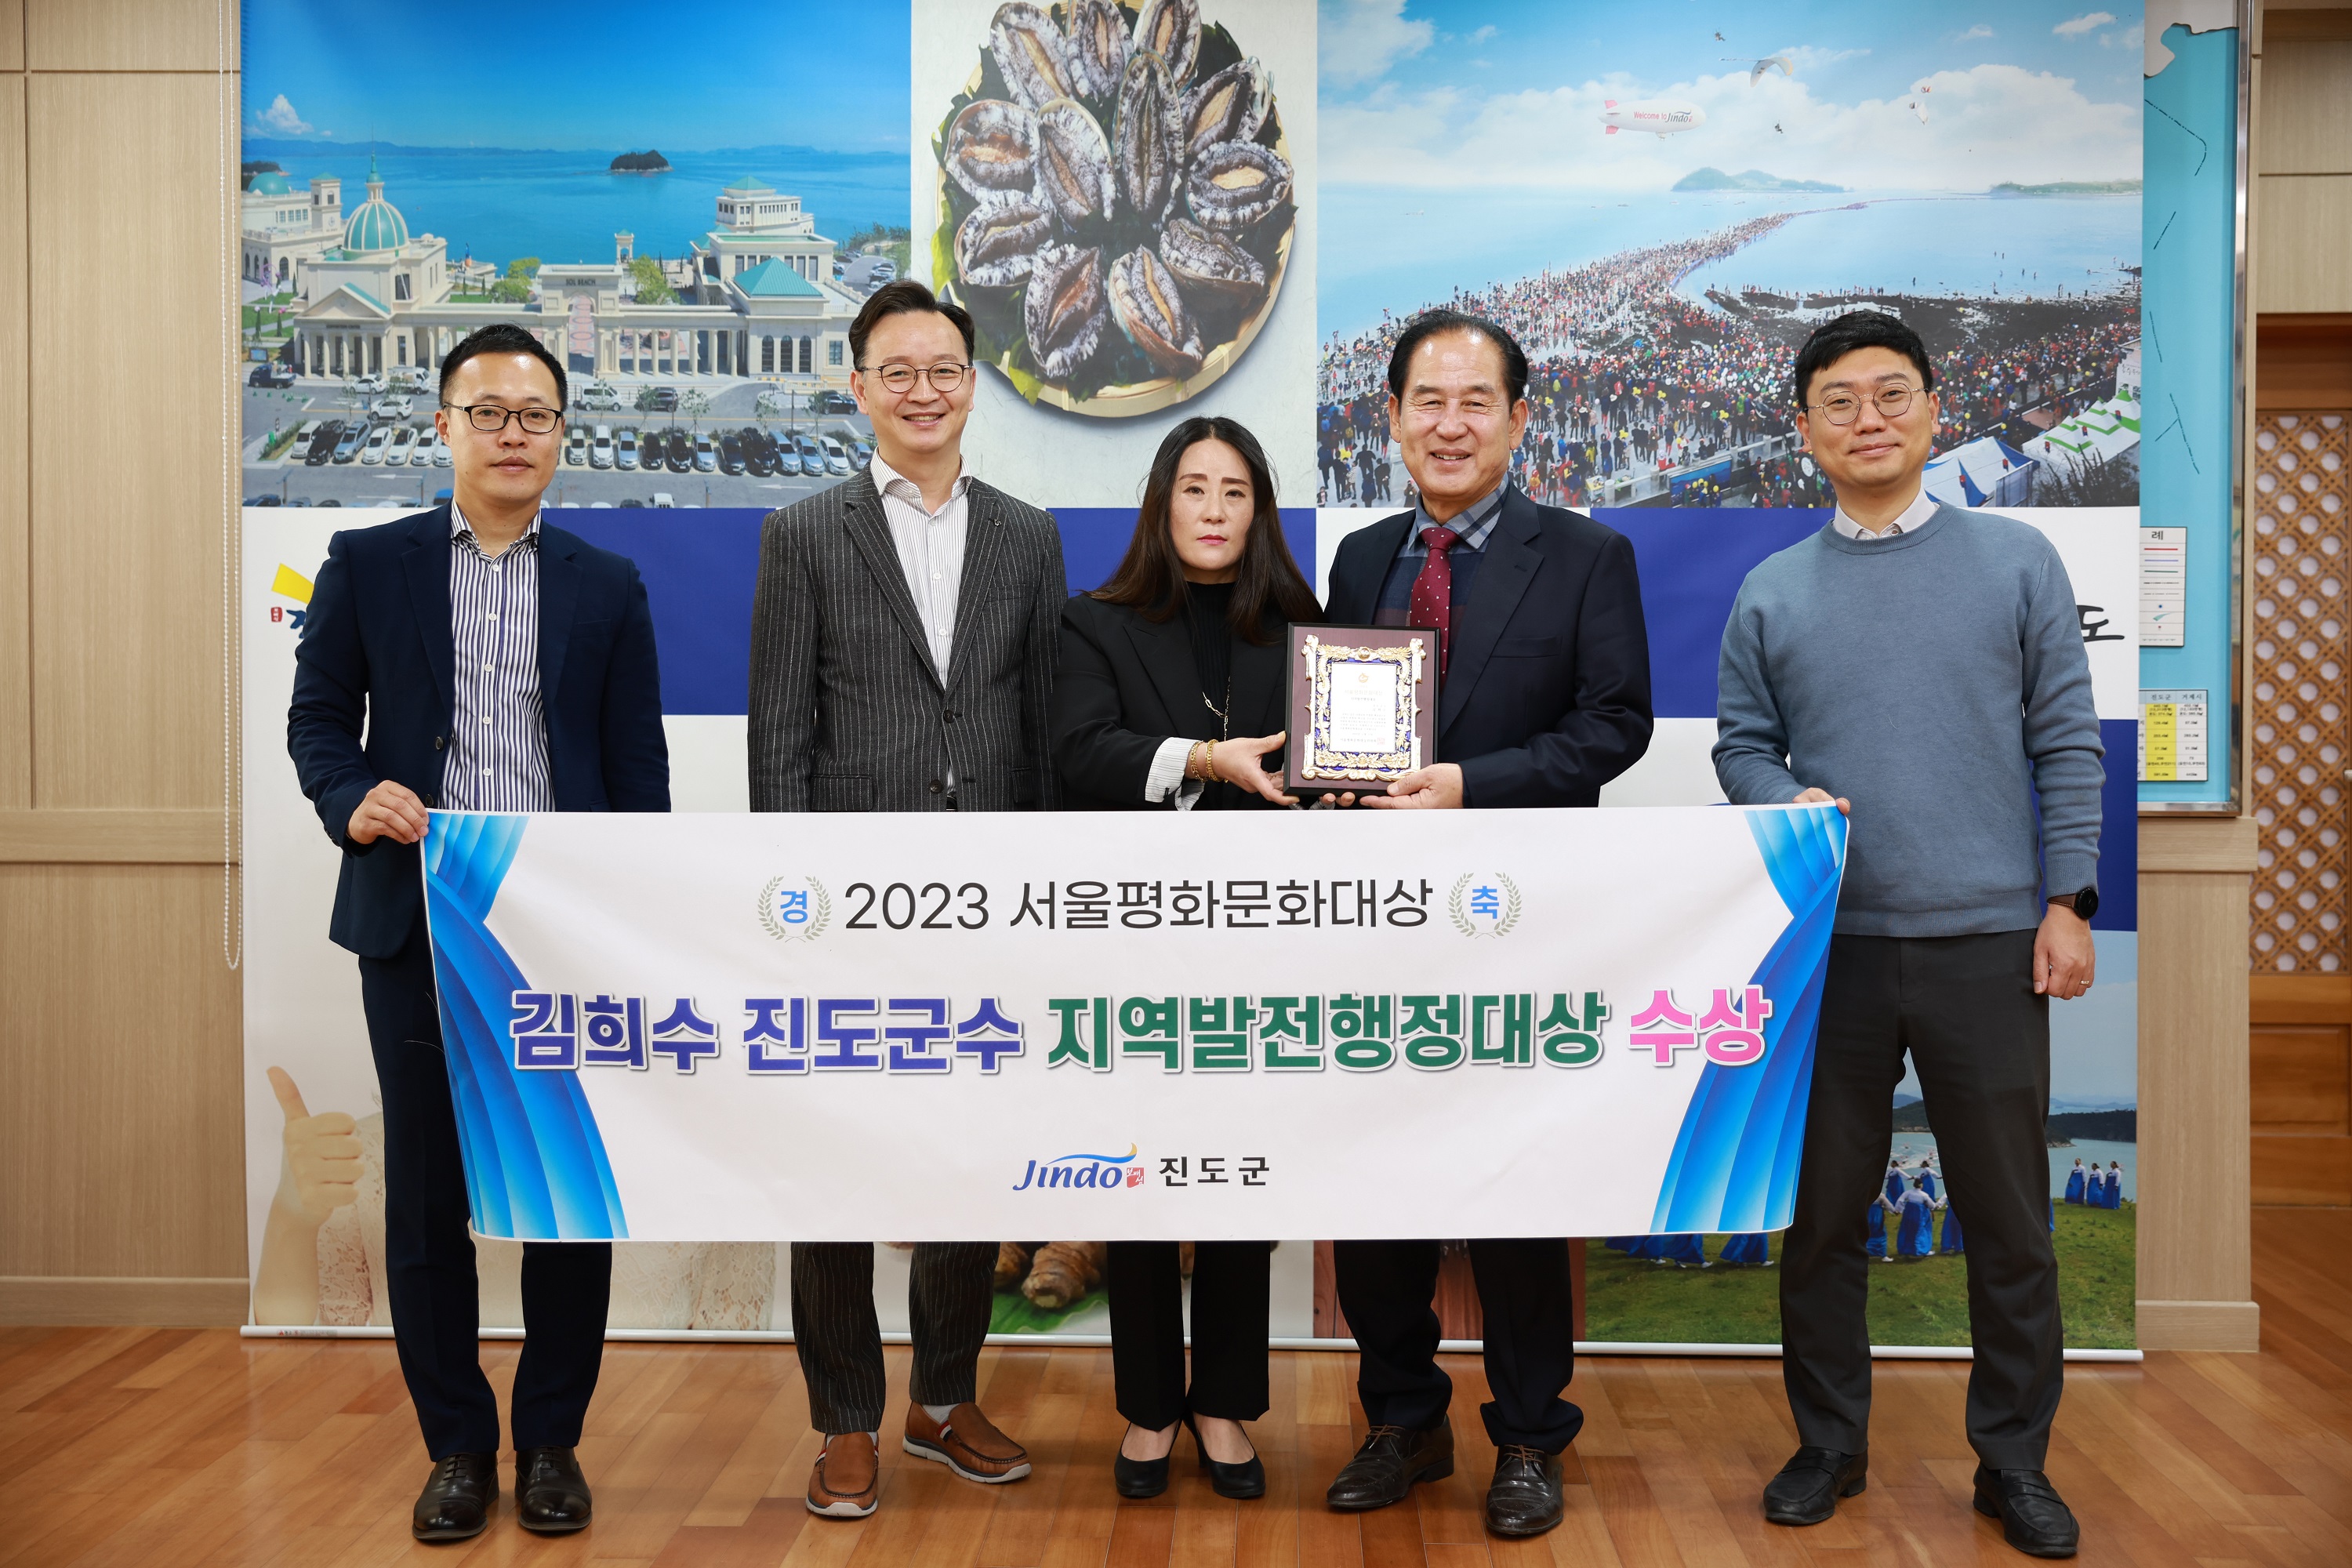 김희수 진도군수 2023 서울평화문화대상 ‘지역발전행정대상’ 수상